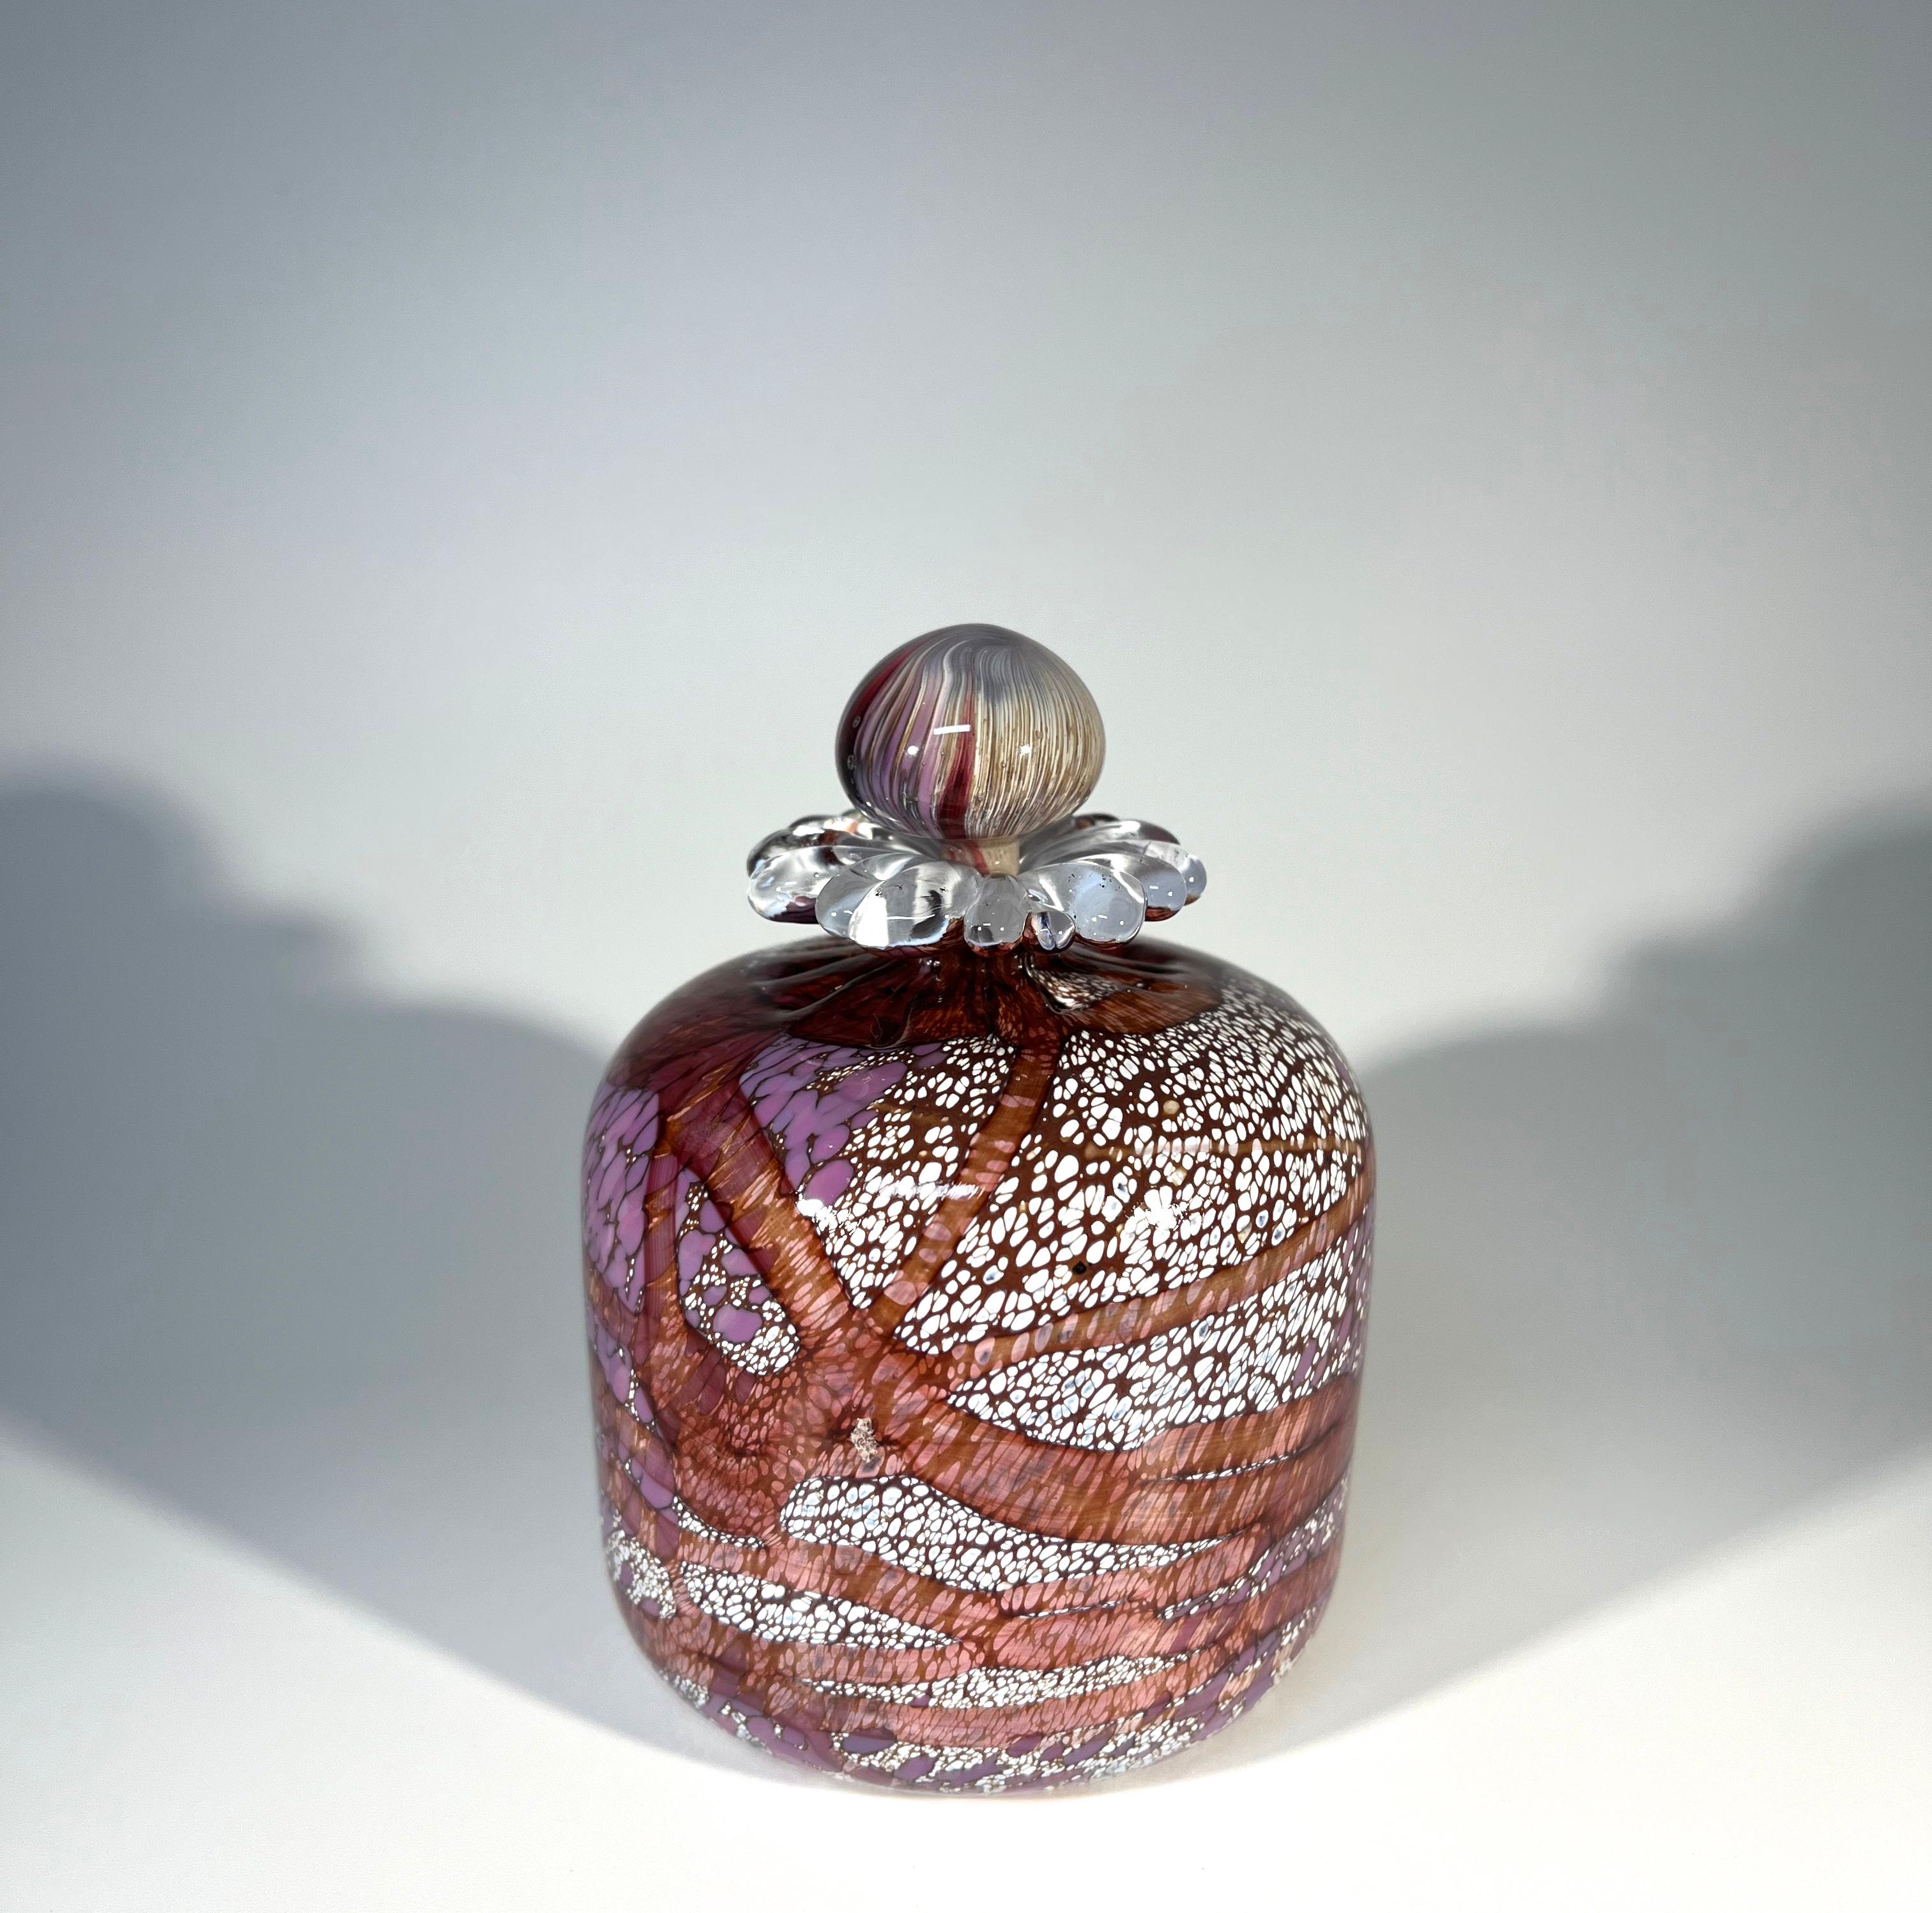 Désirable flacon de parfum, soufflé à la main par Guernsey Island Glass Studios dans les îles Anglo-Normandes.
Créée à partir d'une palette de verre de lilas odorant, de prune et de fleur blanche avec un collier de pétales de marguerite.
Le bouchon